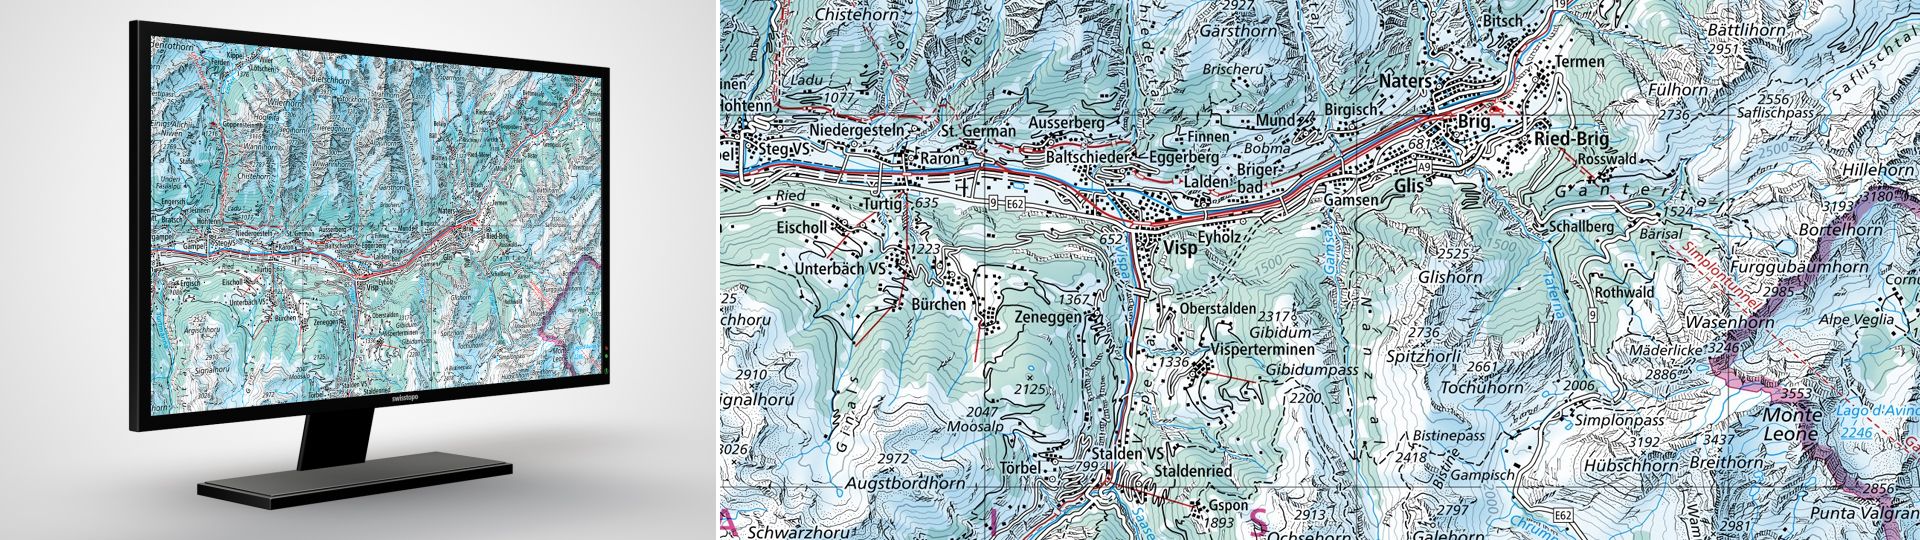 Swiss Map Raster Inverno 200: Swiss Map Raster Inverno 200 è la carta nazionale digitale 1:200 000 in rappresentazione invernale in formato raster.